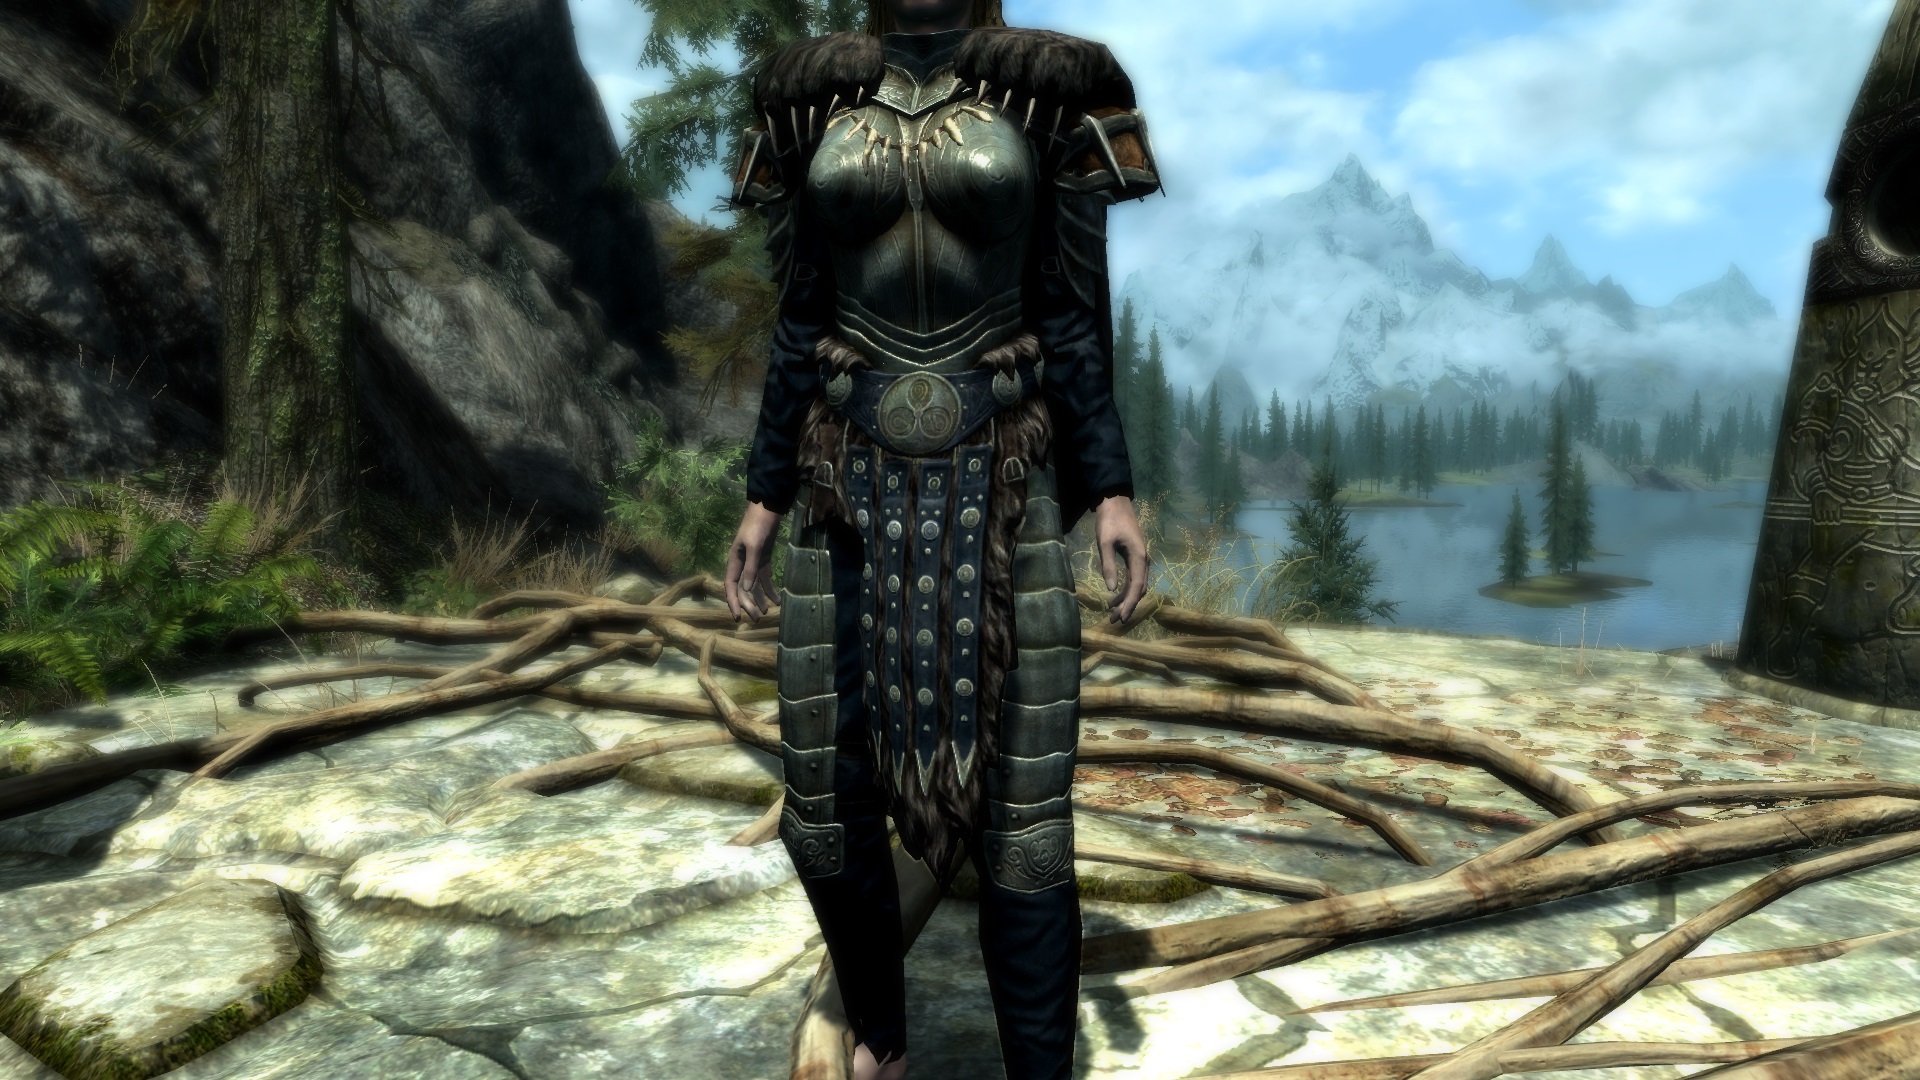 skyrim top female armor mods